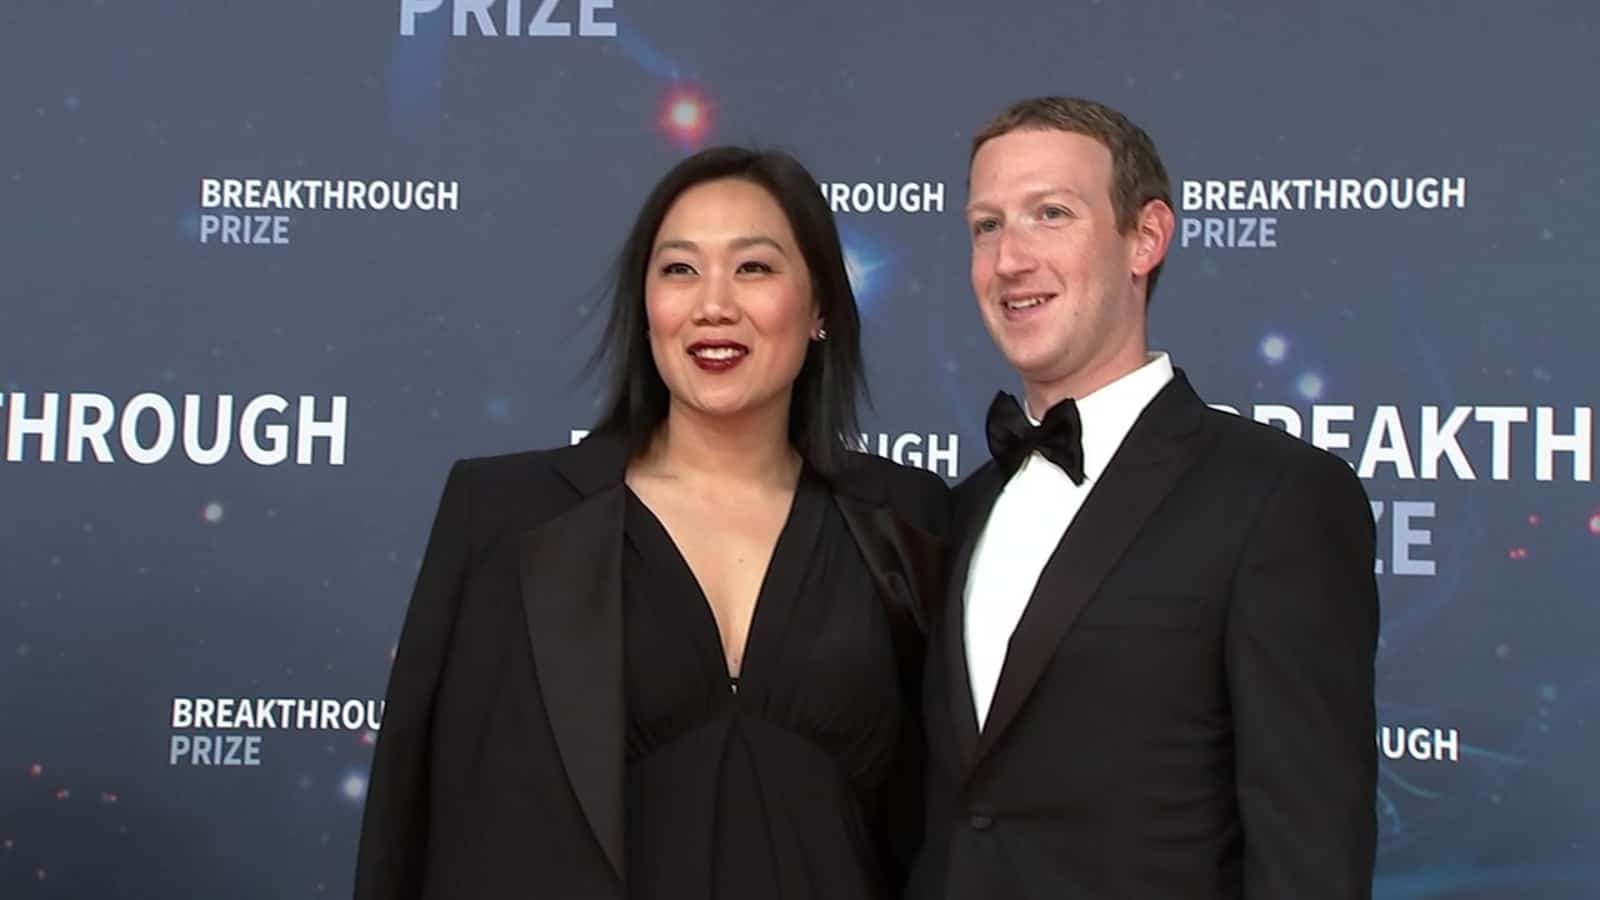 زوكربيرغ وزوجته في أول ظهور رسمي بعد أزمة فايسبوك